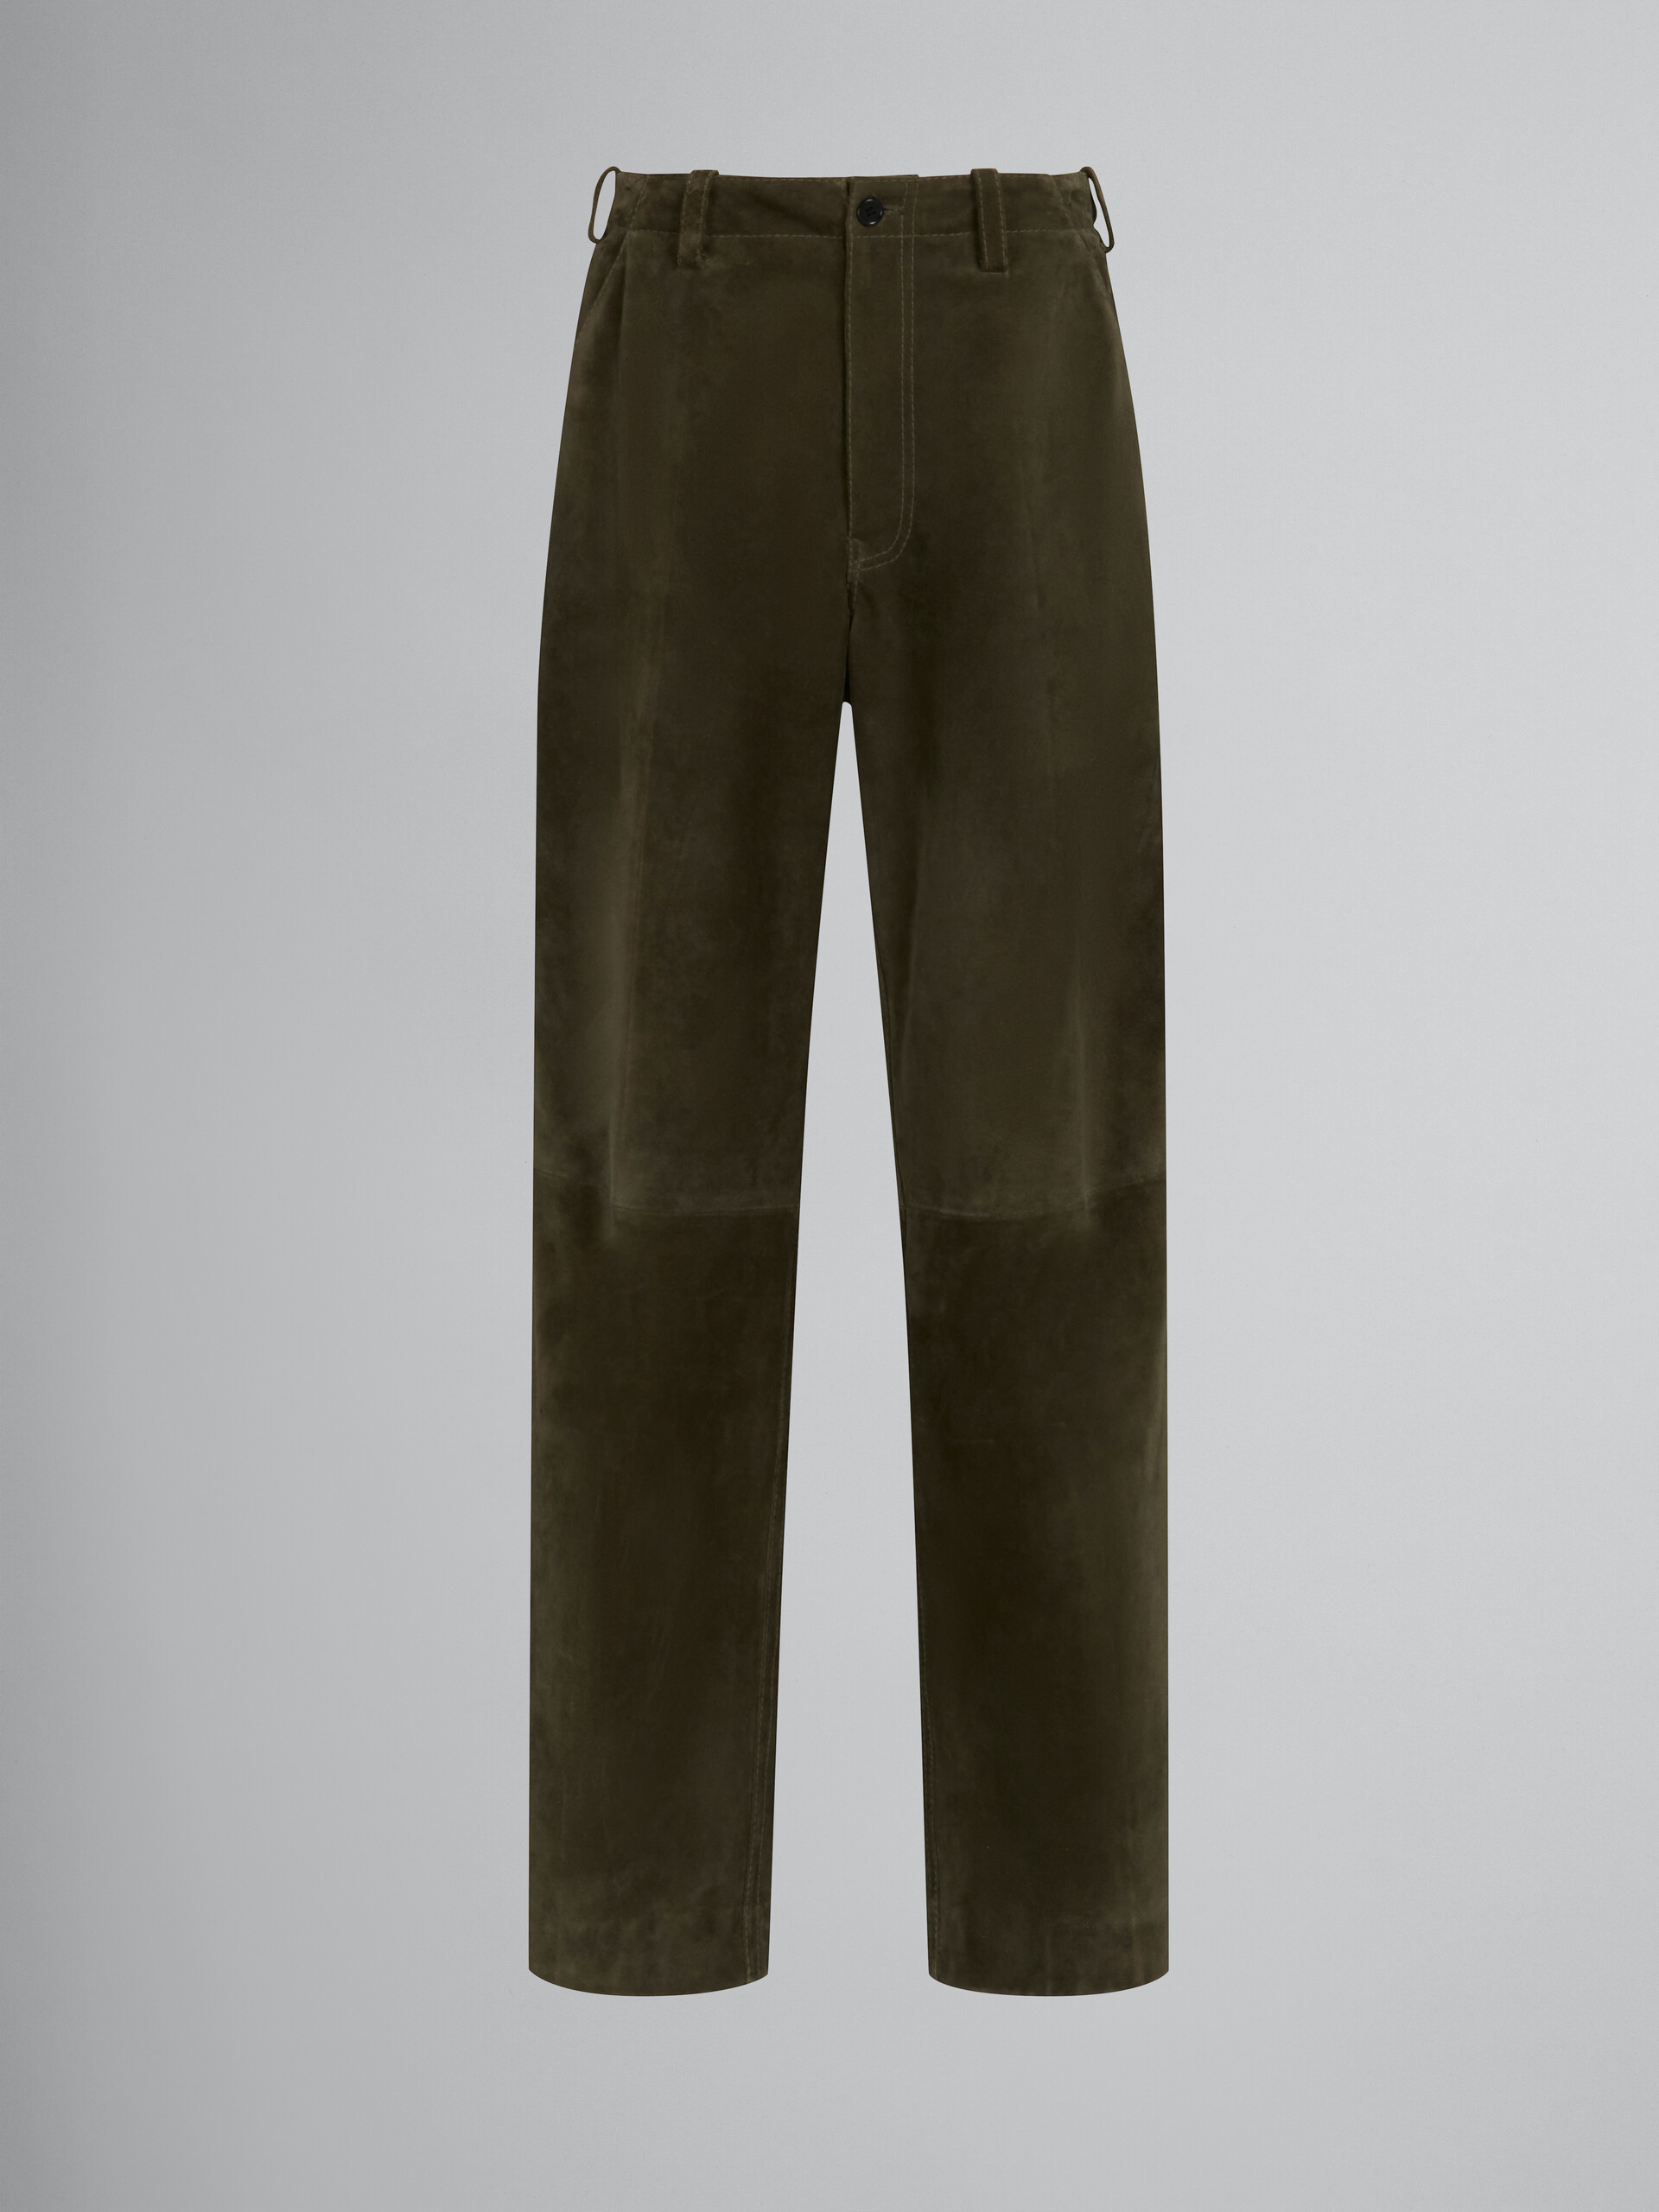 Pantalón verde de ante compacto - Pantalones - Image 1